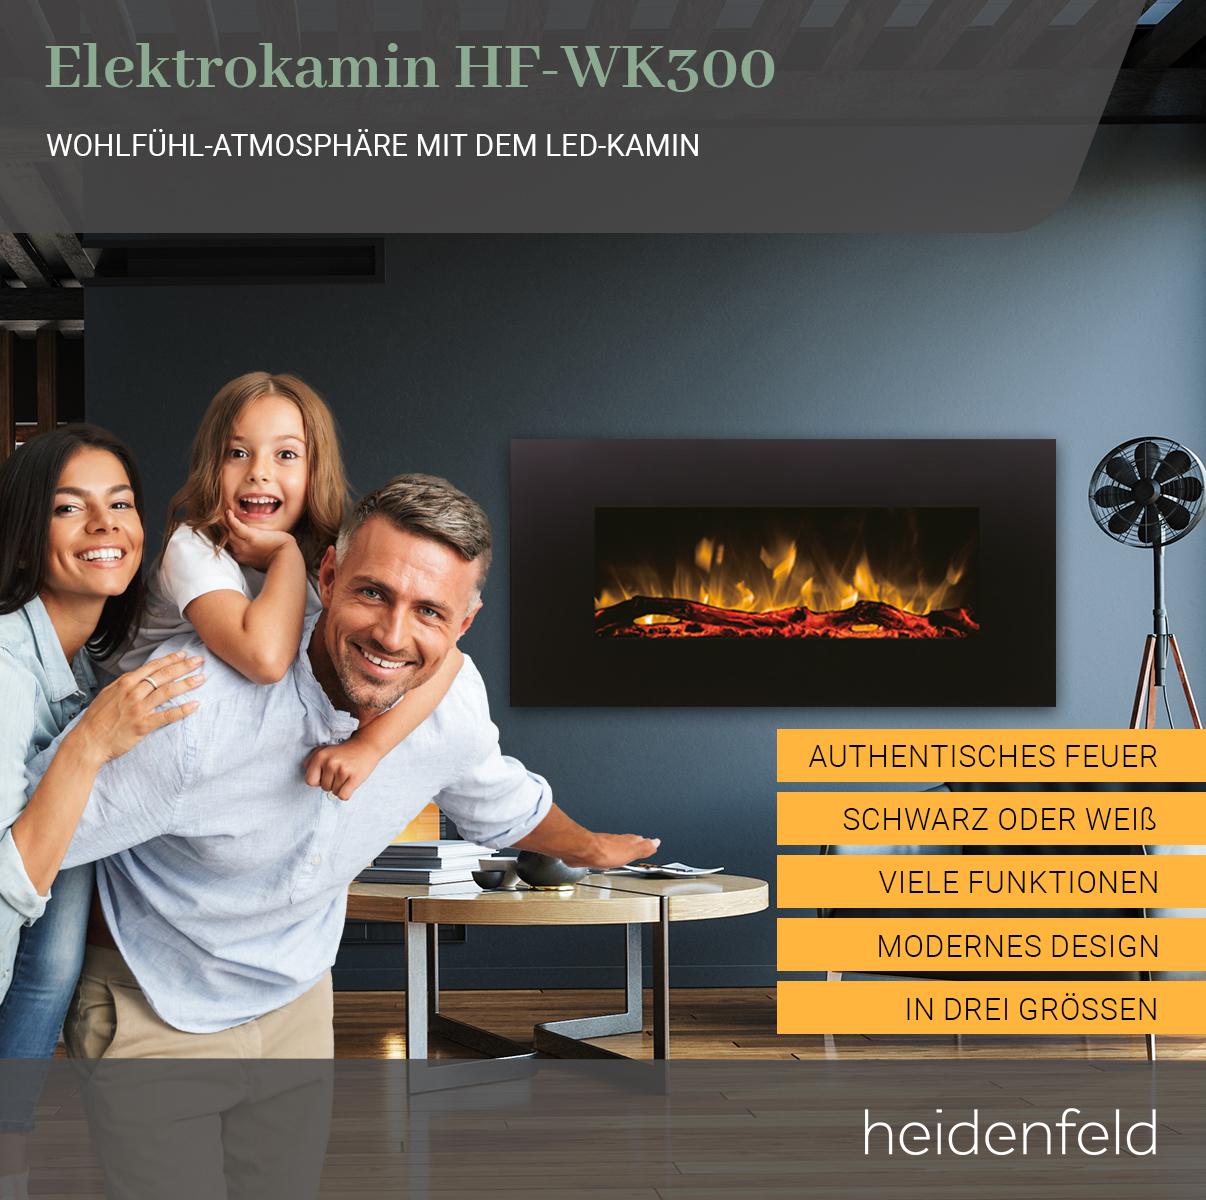 (1500 cm HEIDENFELD Elektrokamin x 55.0 Wandkamin HF-WK300 107.0 Watt)